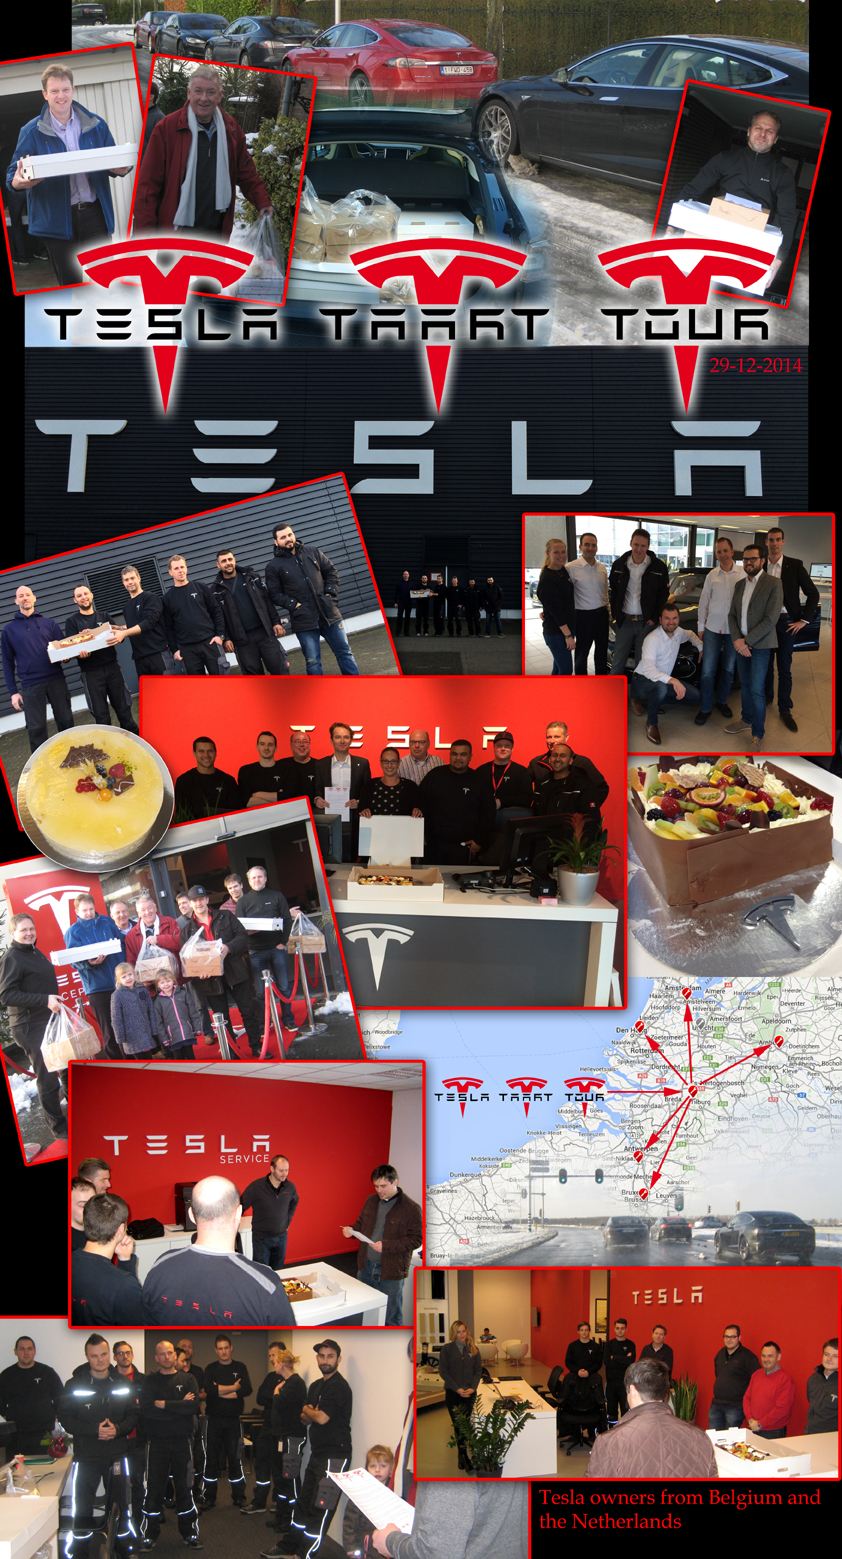 Tesla taart tour collage 72dpi.jpg